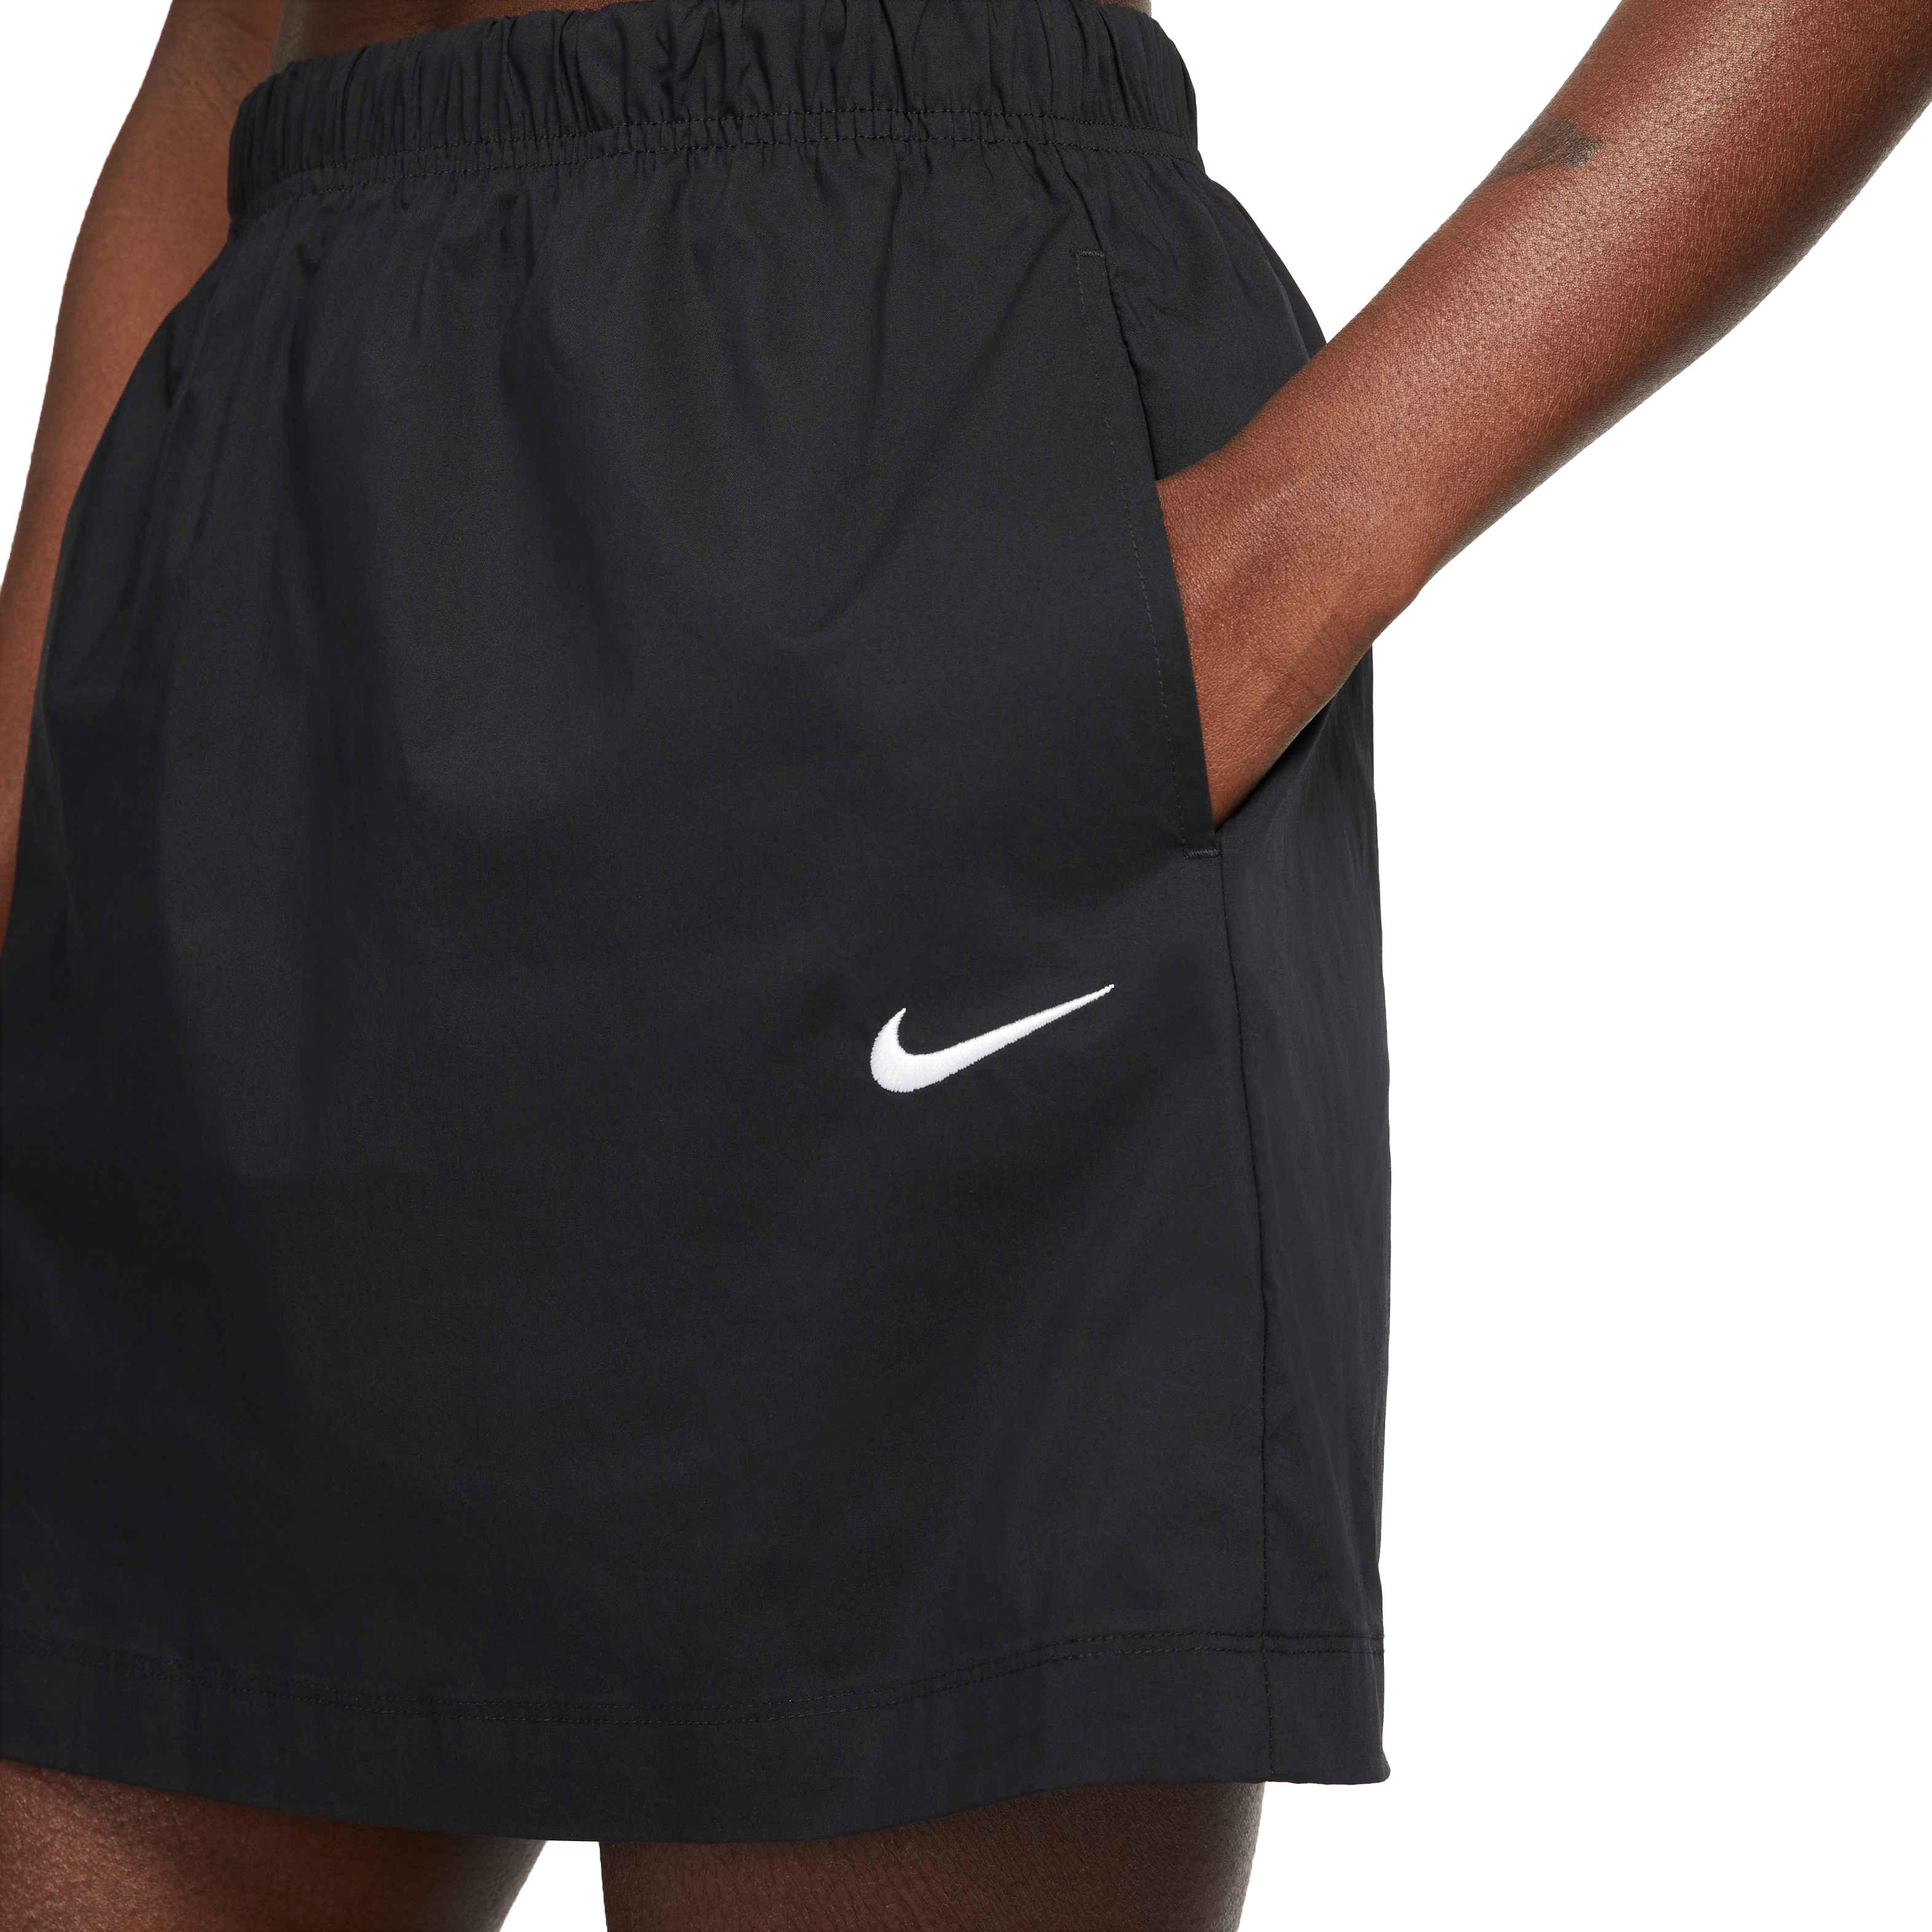 Nike Sportswear Essential Women's High-Waisted Woven Skirt